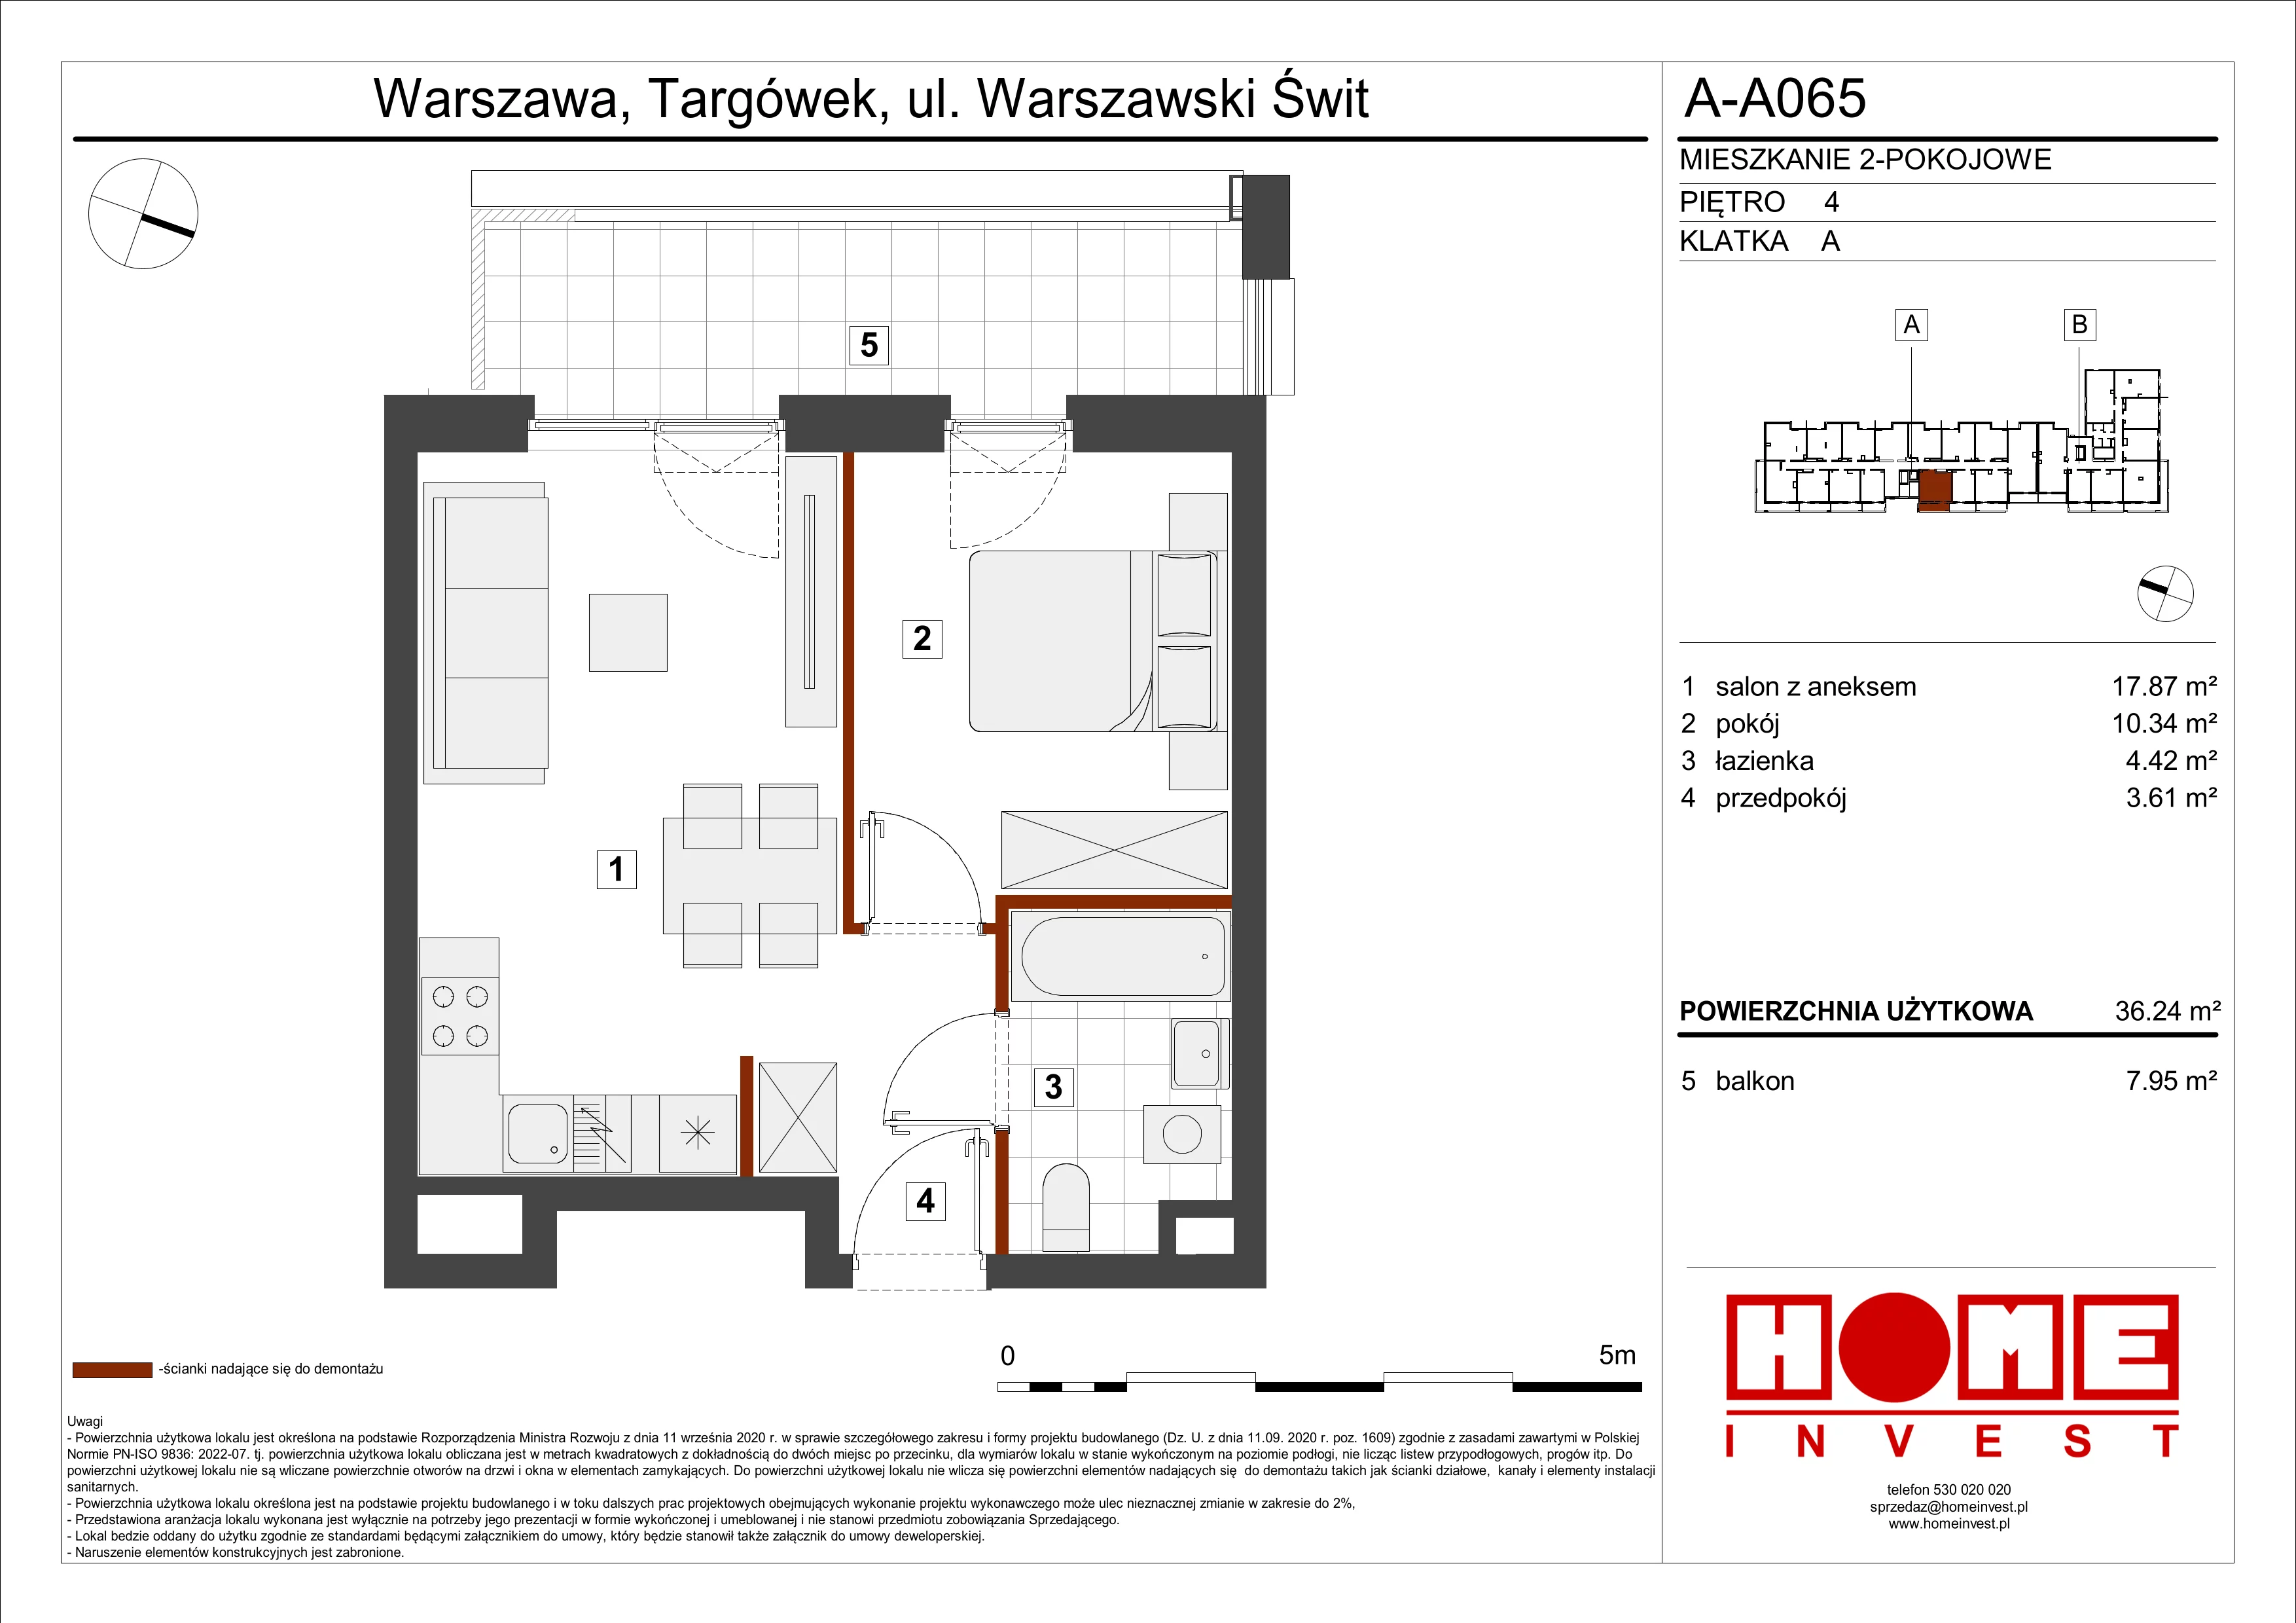 Mieszkanie 36,24 m², piętro 4, oferta nr A-A065, Warszawski Świt, Warszawa, Targówek, Bródno, ul. Warszawski Świt 5